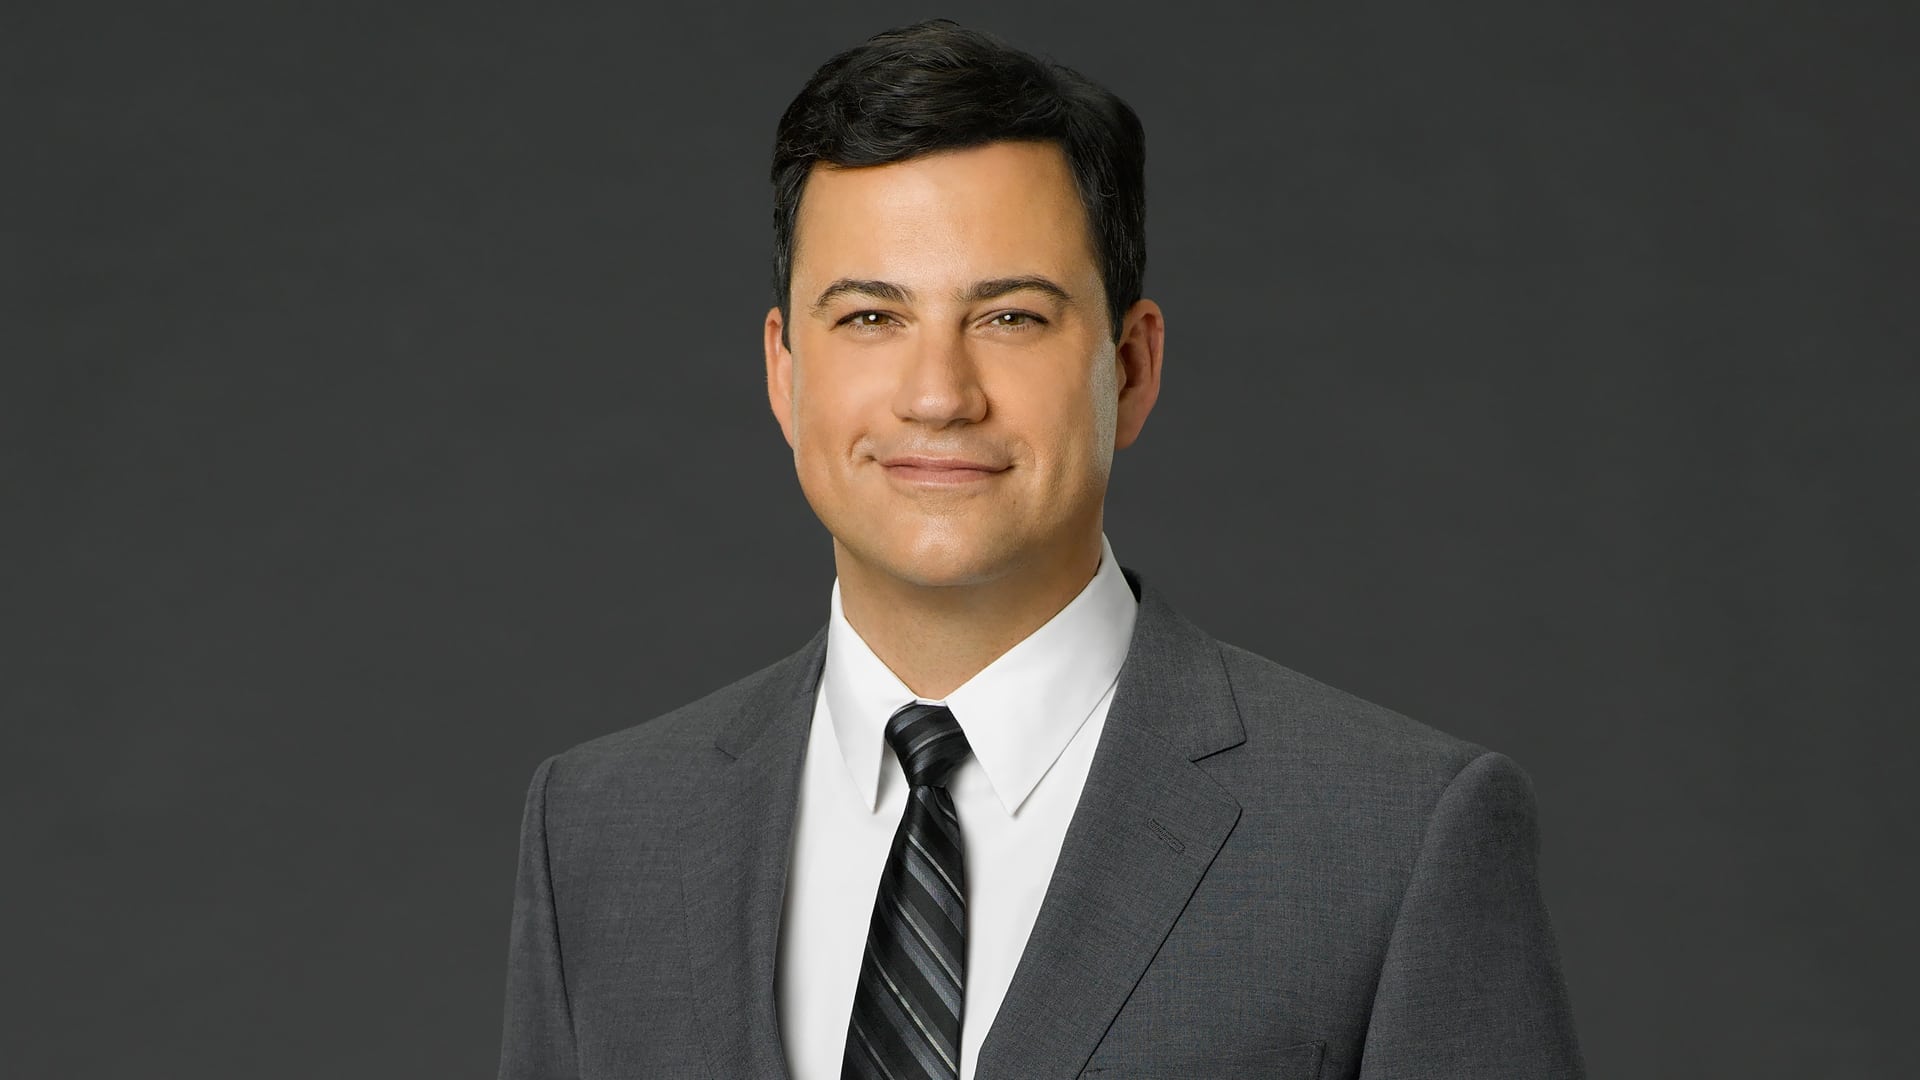 Jimmy Kimmel Live! - Season 22 Episode 43